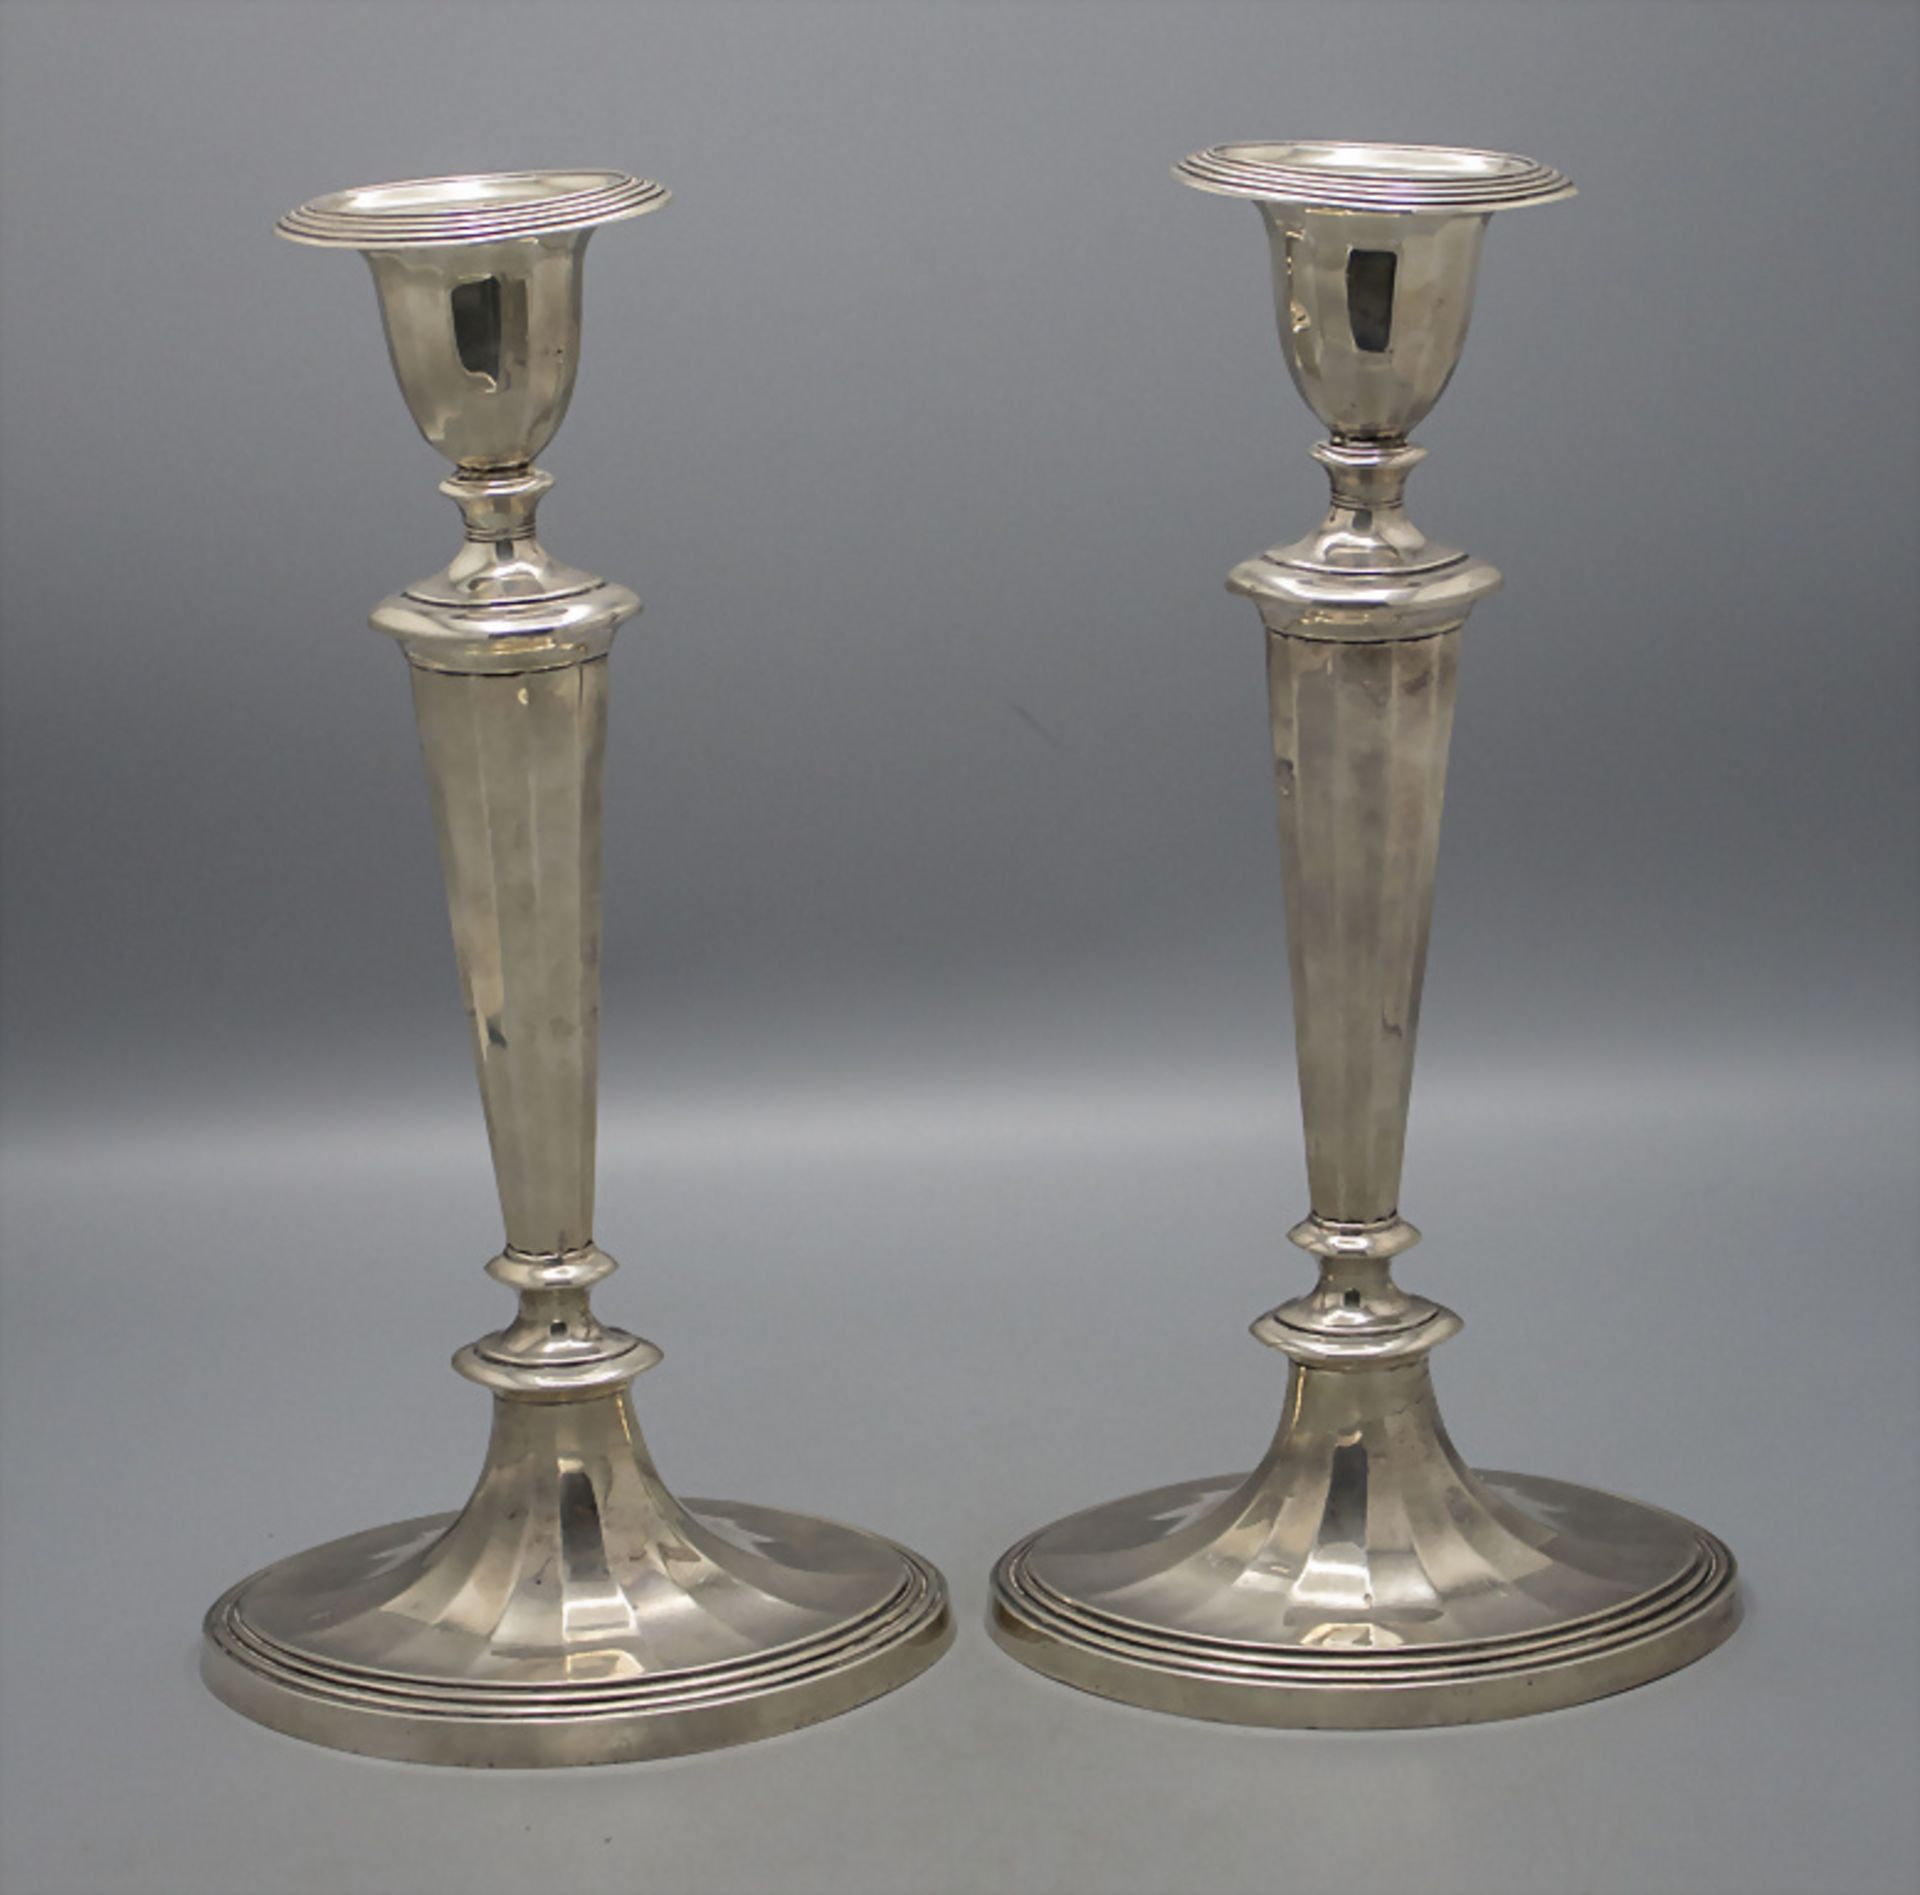 Paar Kerzenleuchter / A pair of silver candlesticks, Hamilton & Co., London, 1914